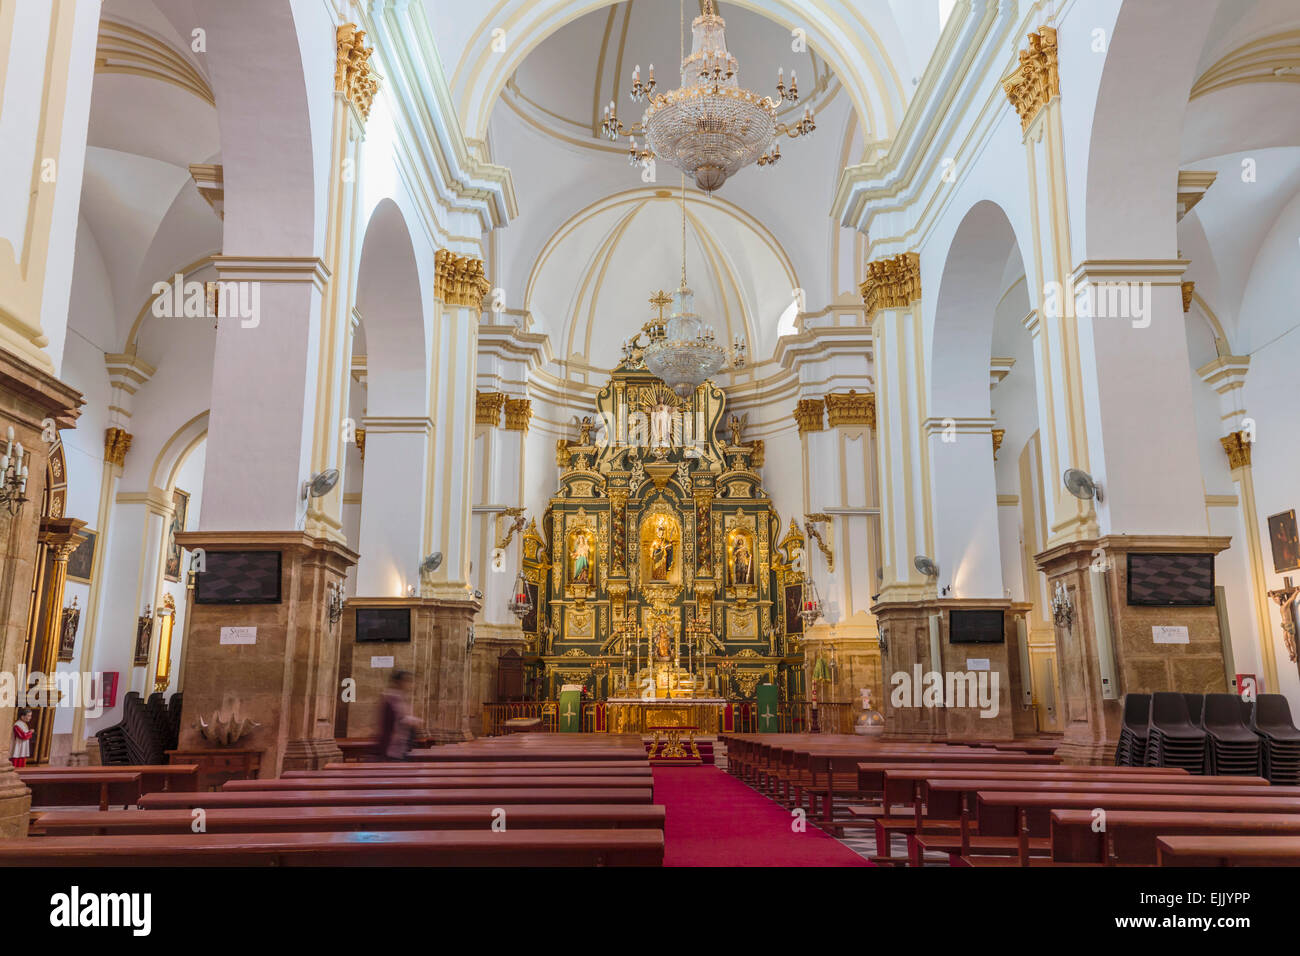 Marbella, Costa del Sol, Malaga Province, Andalusia, southern Spain. Interior of Nuestra Señora de la Encarnacion church Stock Photo